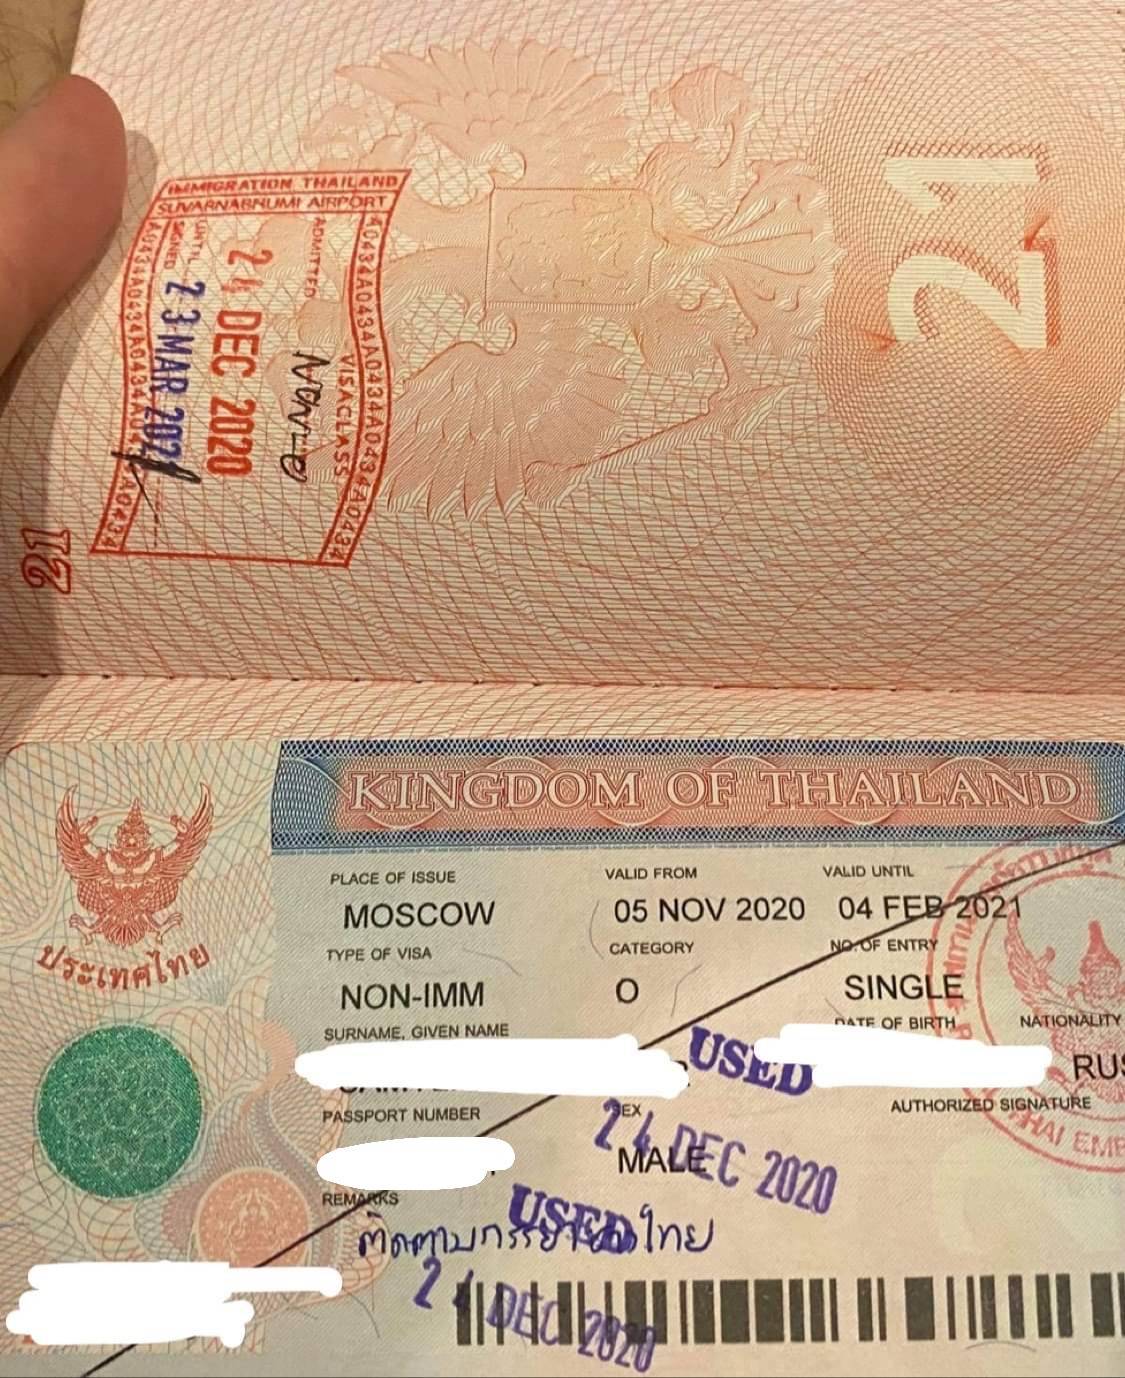 Нужна ли виза в таиланд для поездки в отпуск? все, что нужно знать